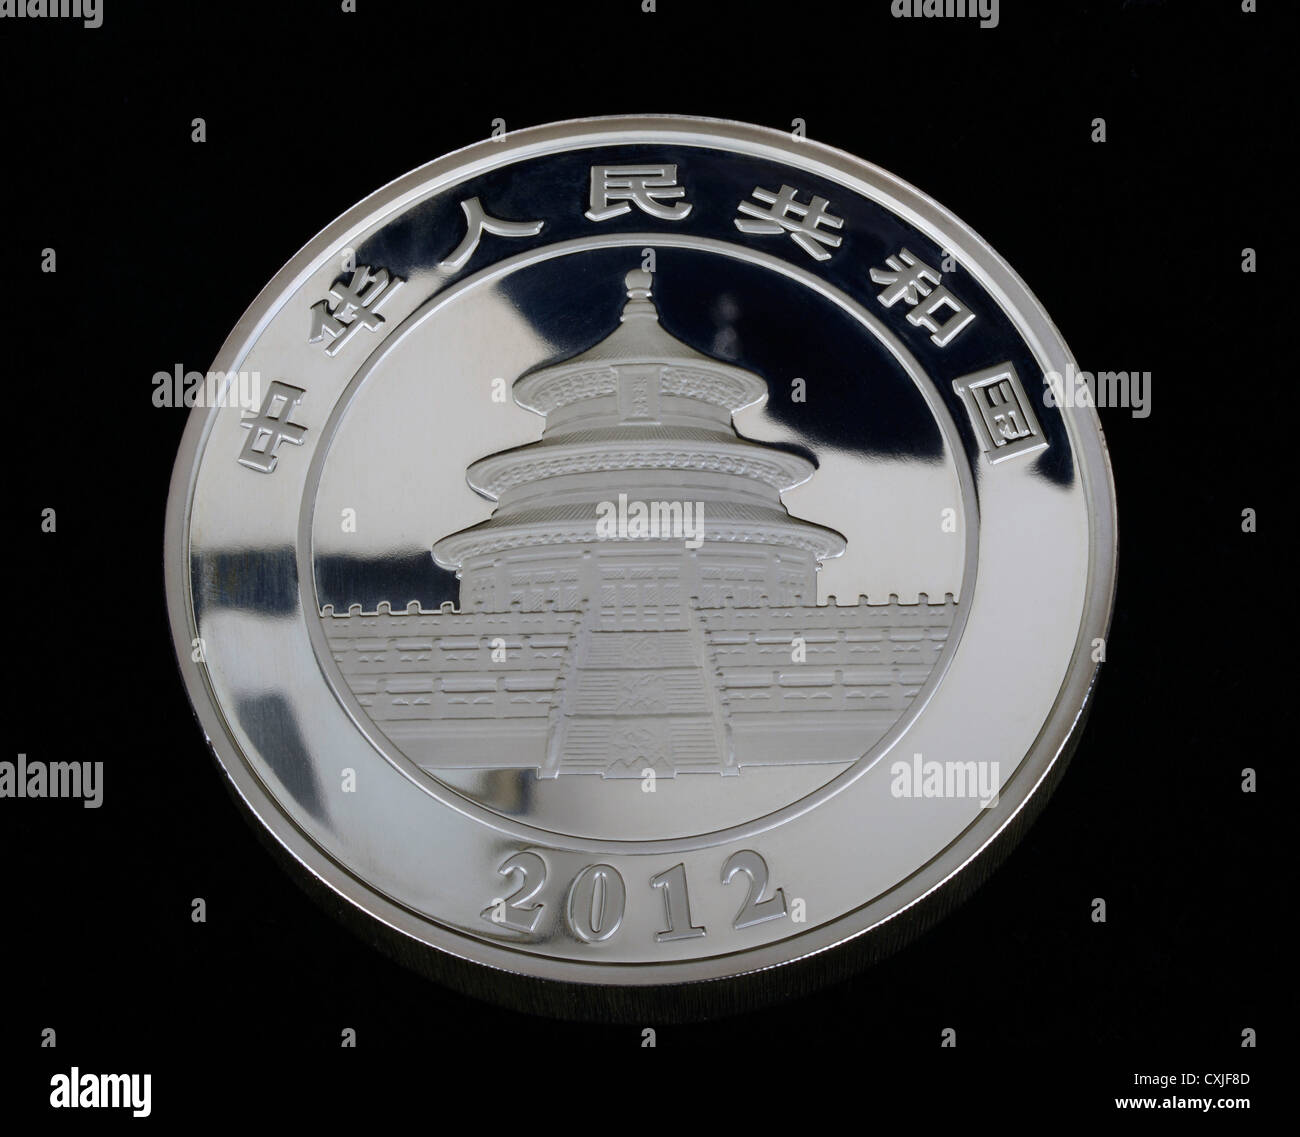 Chinesische Silber Panda, eine Reihe von Silberbarren Münzen der Volksrepublik China.  2012 ist das 30. Jahr der Serie. Stockfoto